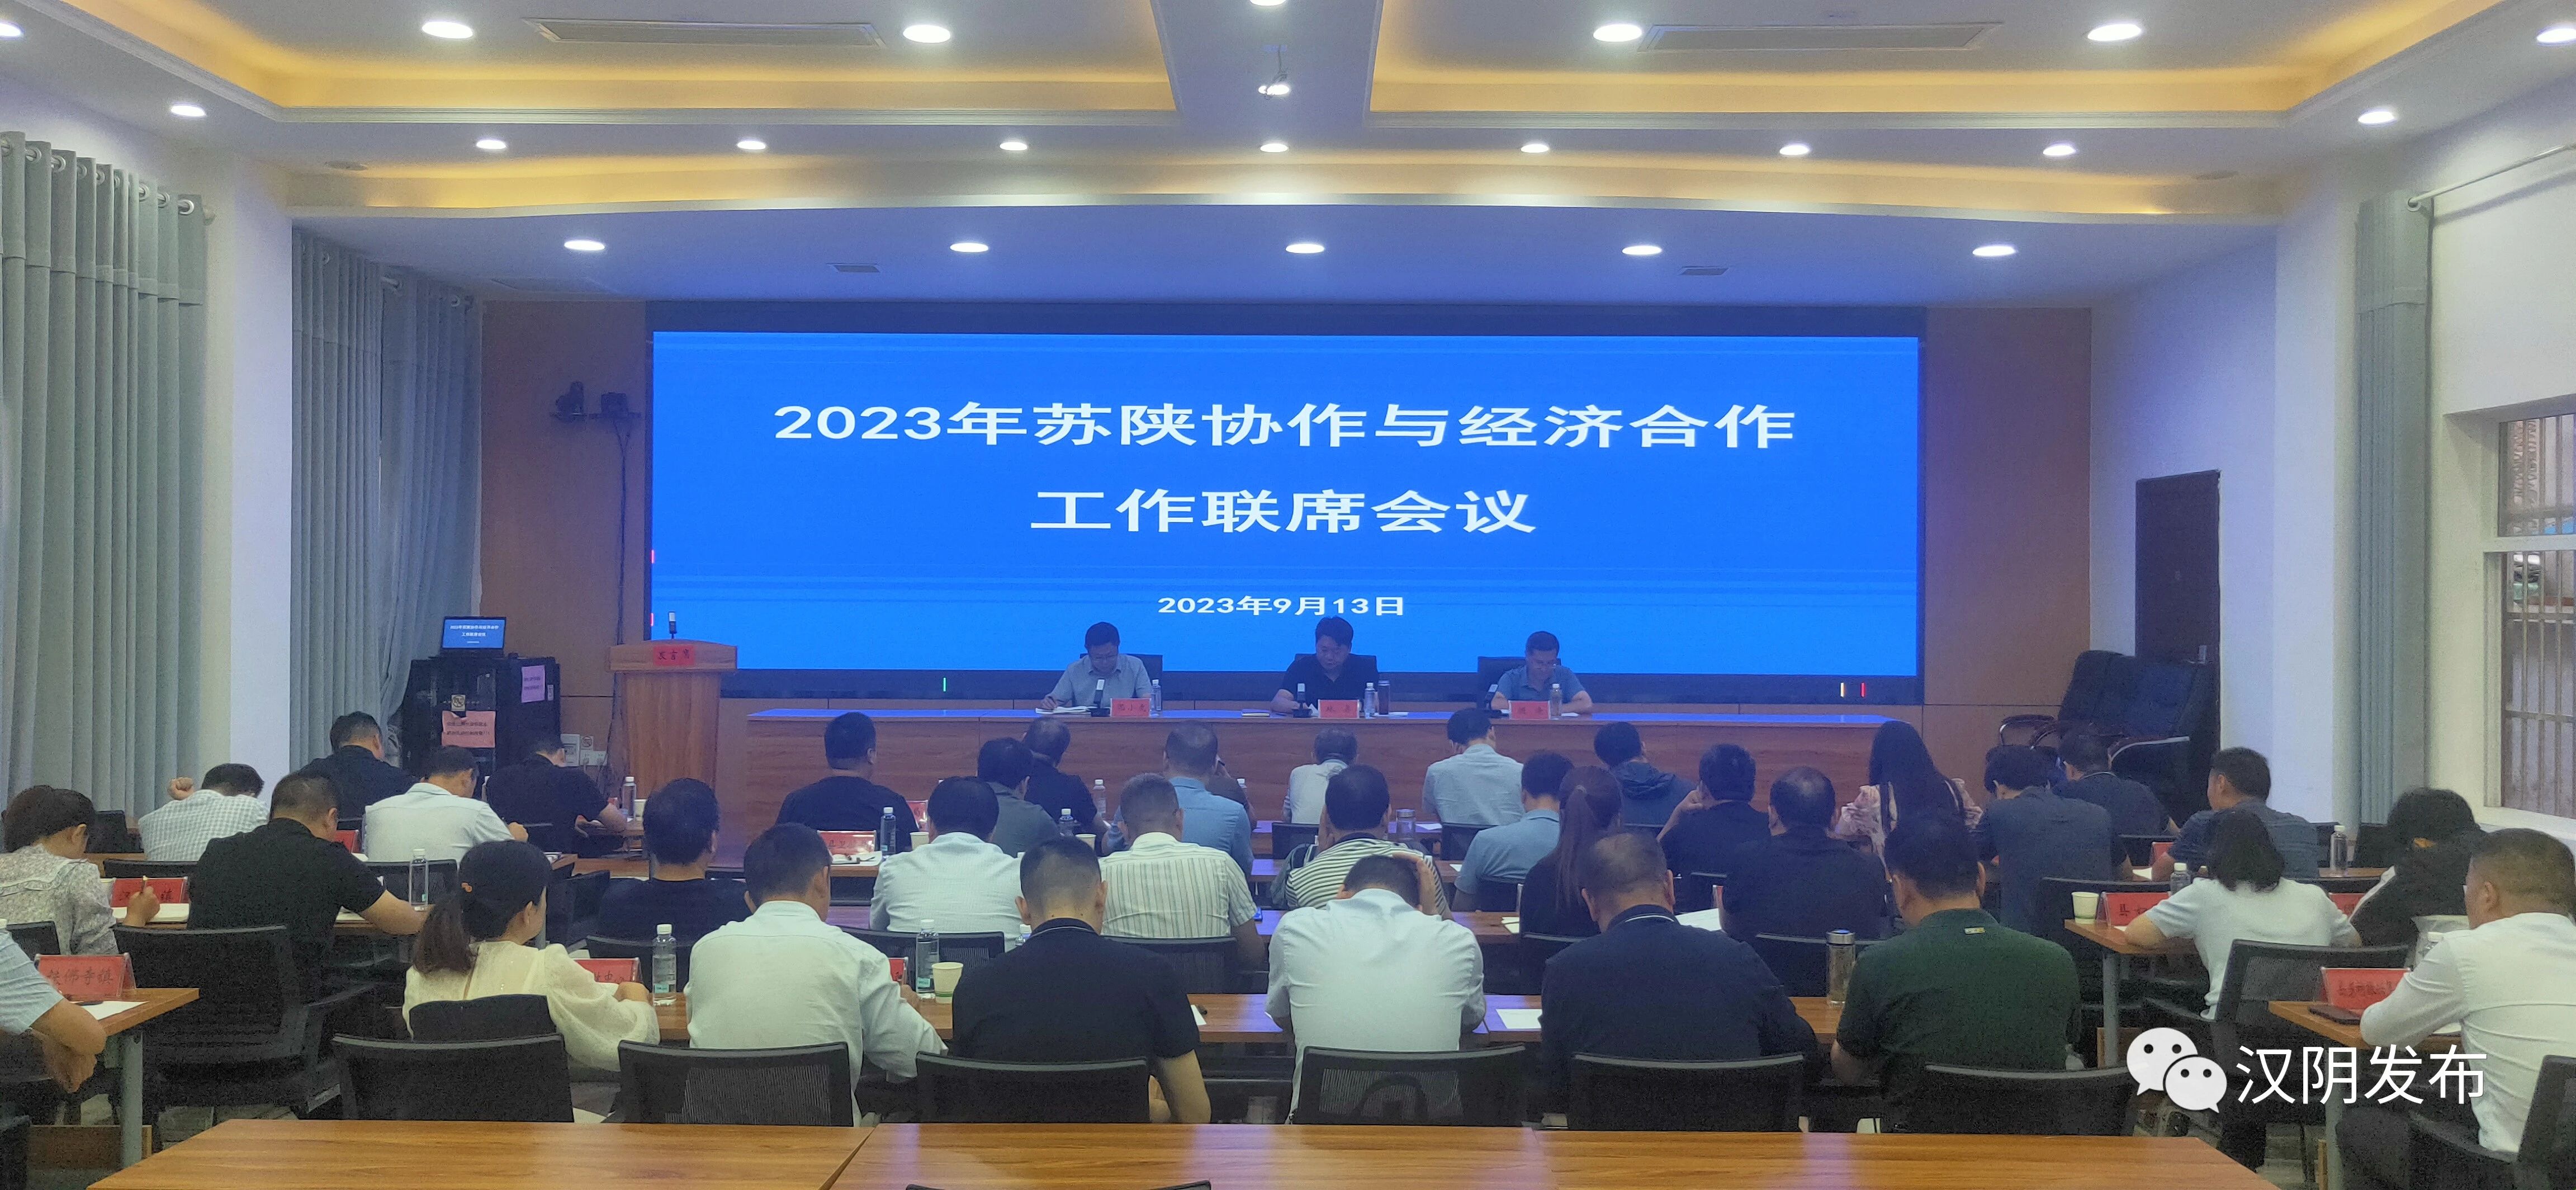 汉阴县召开2023年苏陕协作与经济合作工作联席会议